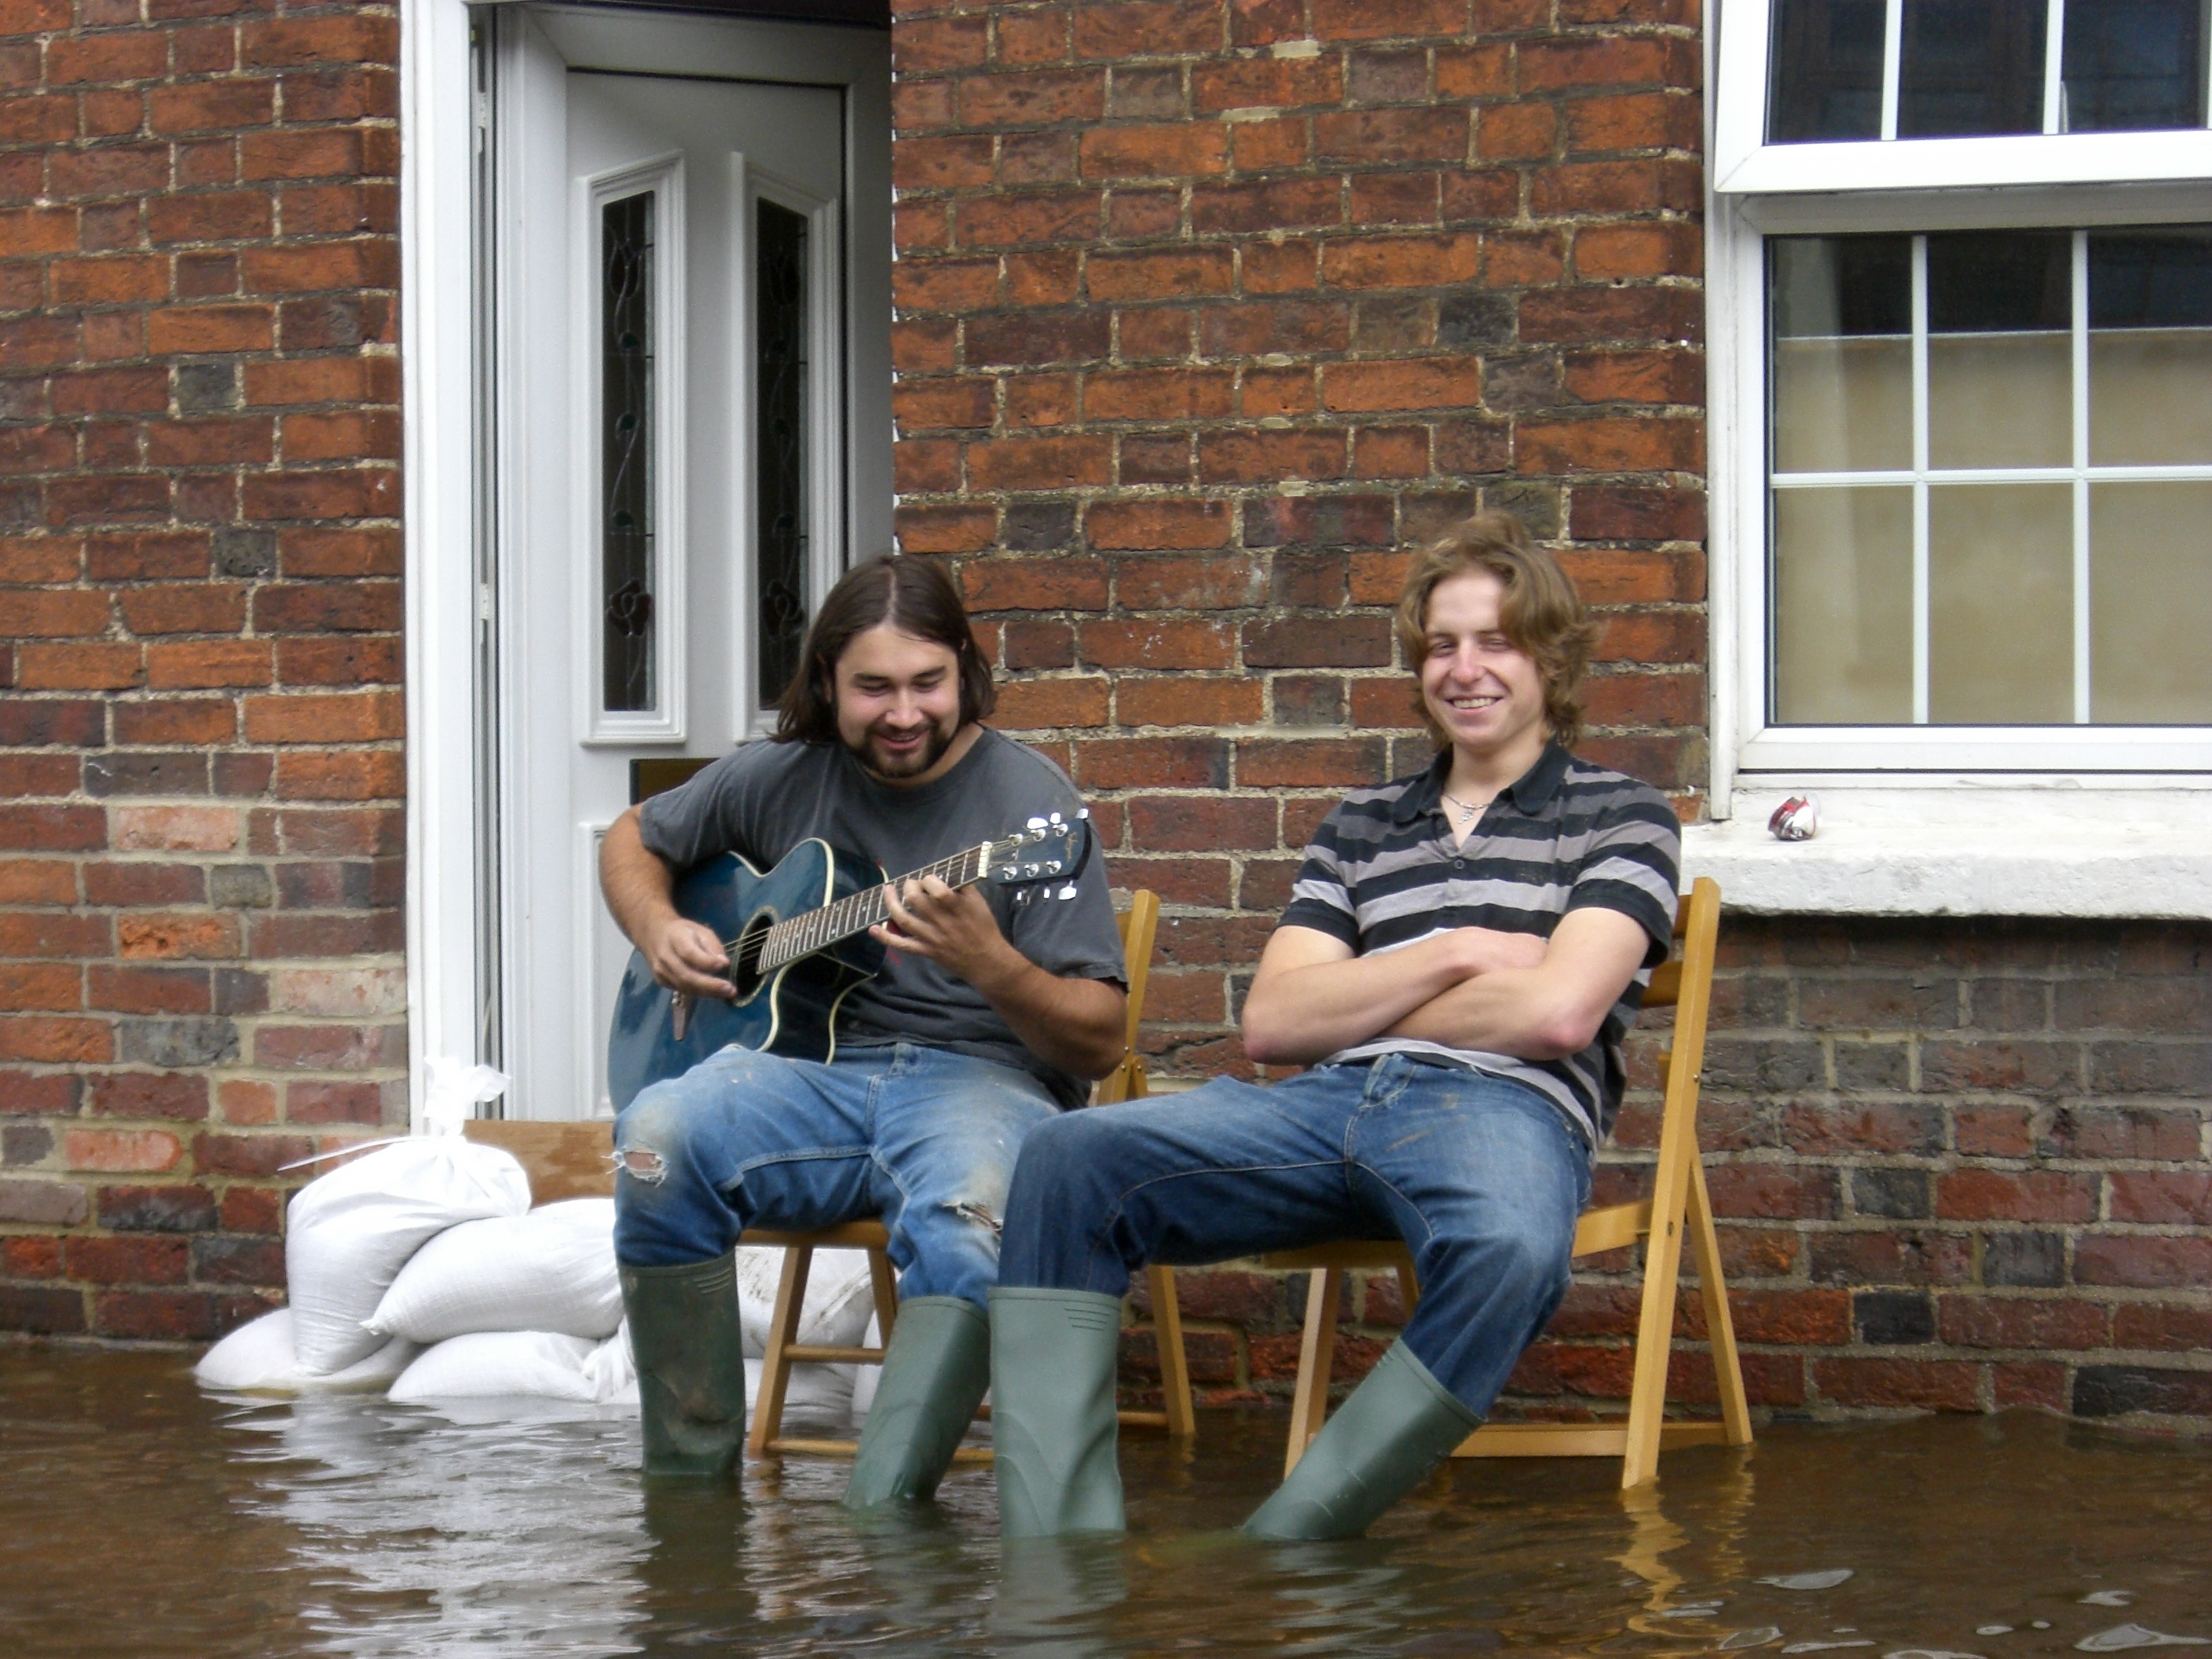 UK 2007 floods musicians